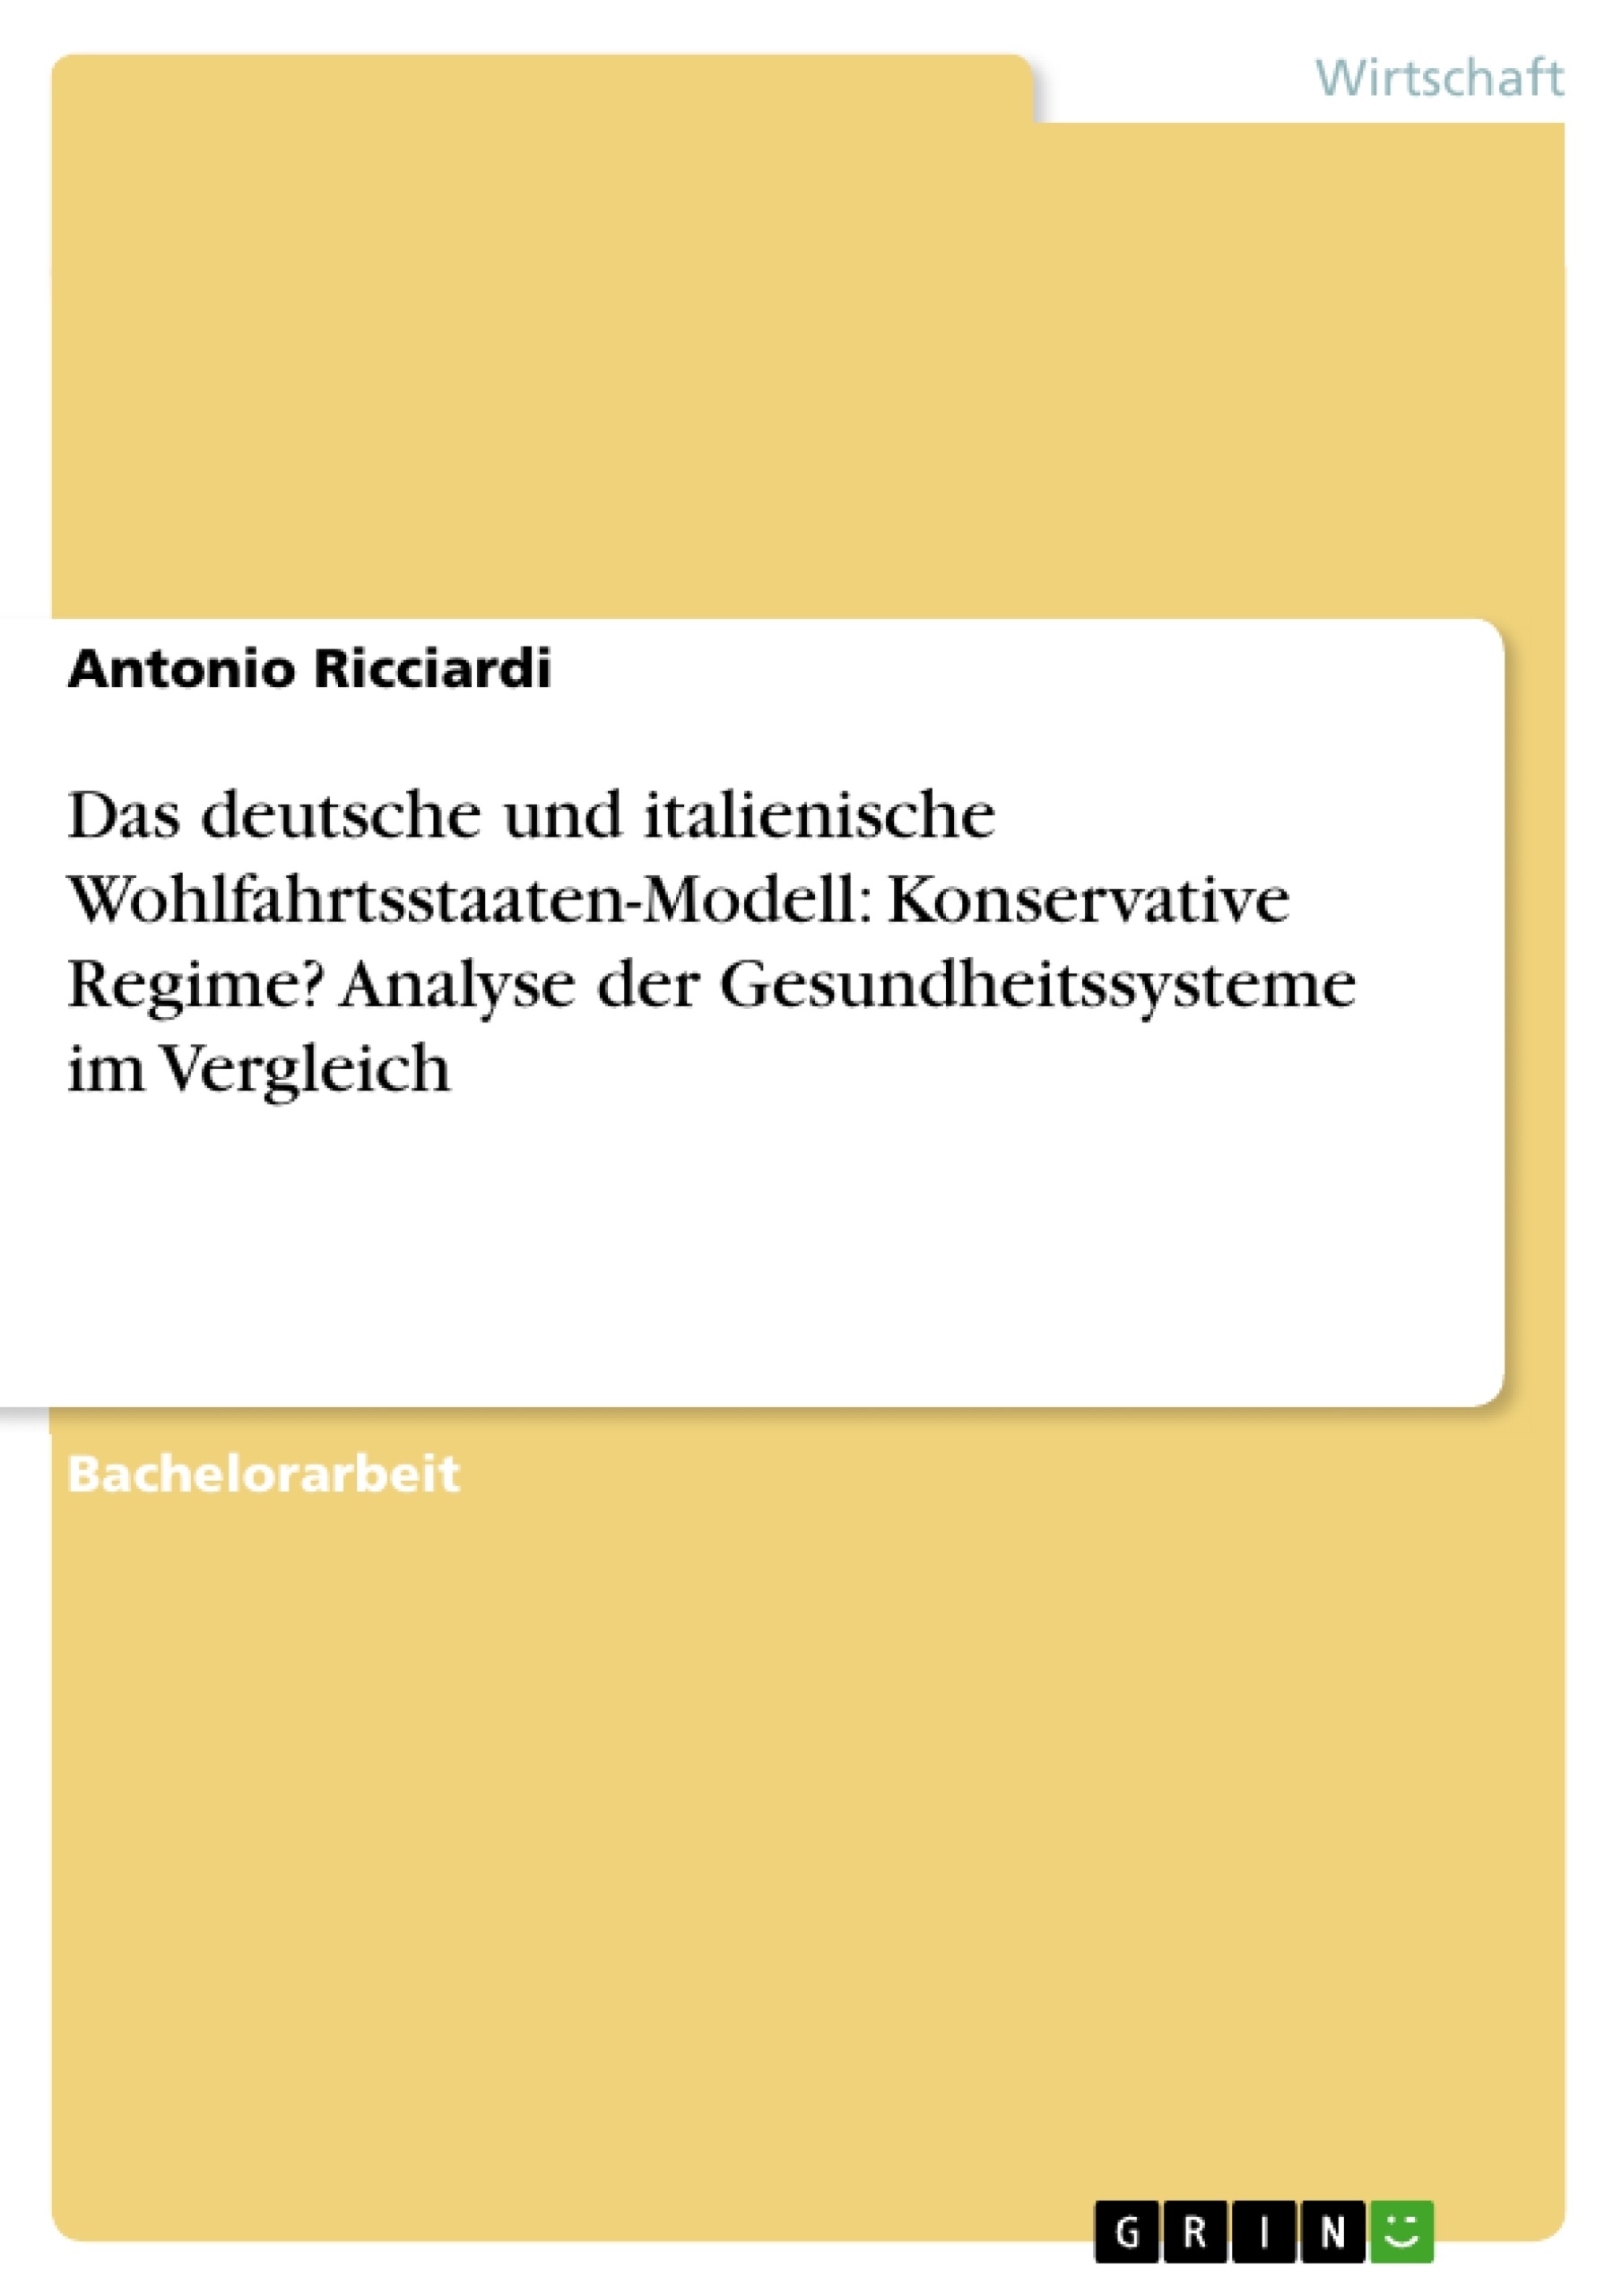 Titre: Das deutsche und italienische Wohlfahrtsstaaten-Modell: Konservative Regime? Analyse der Gesundheitssysteme im Vergleich